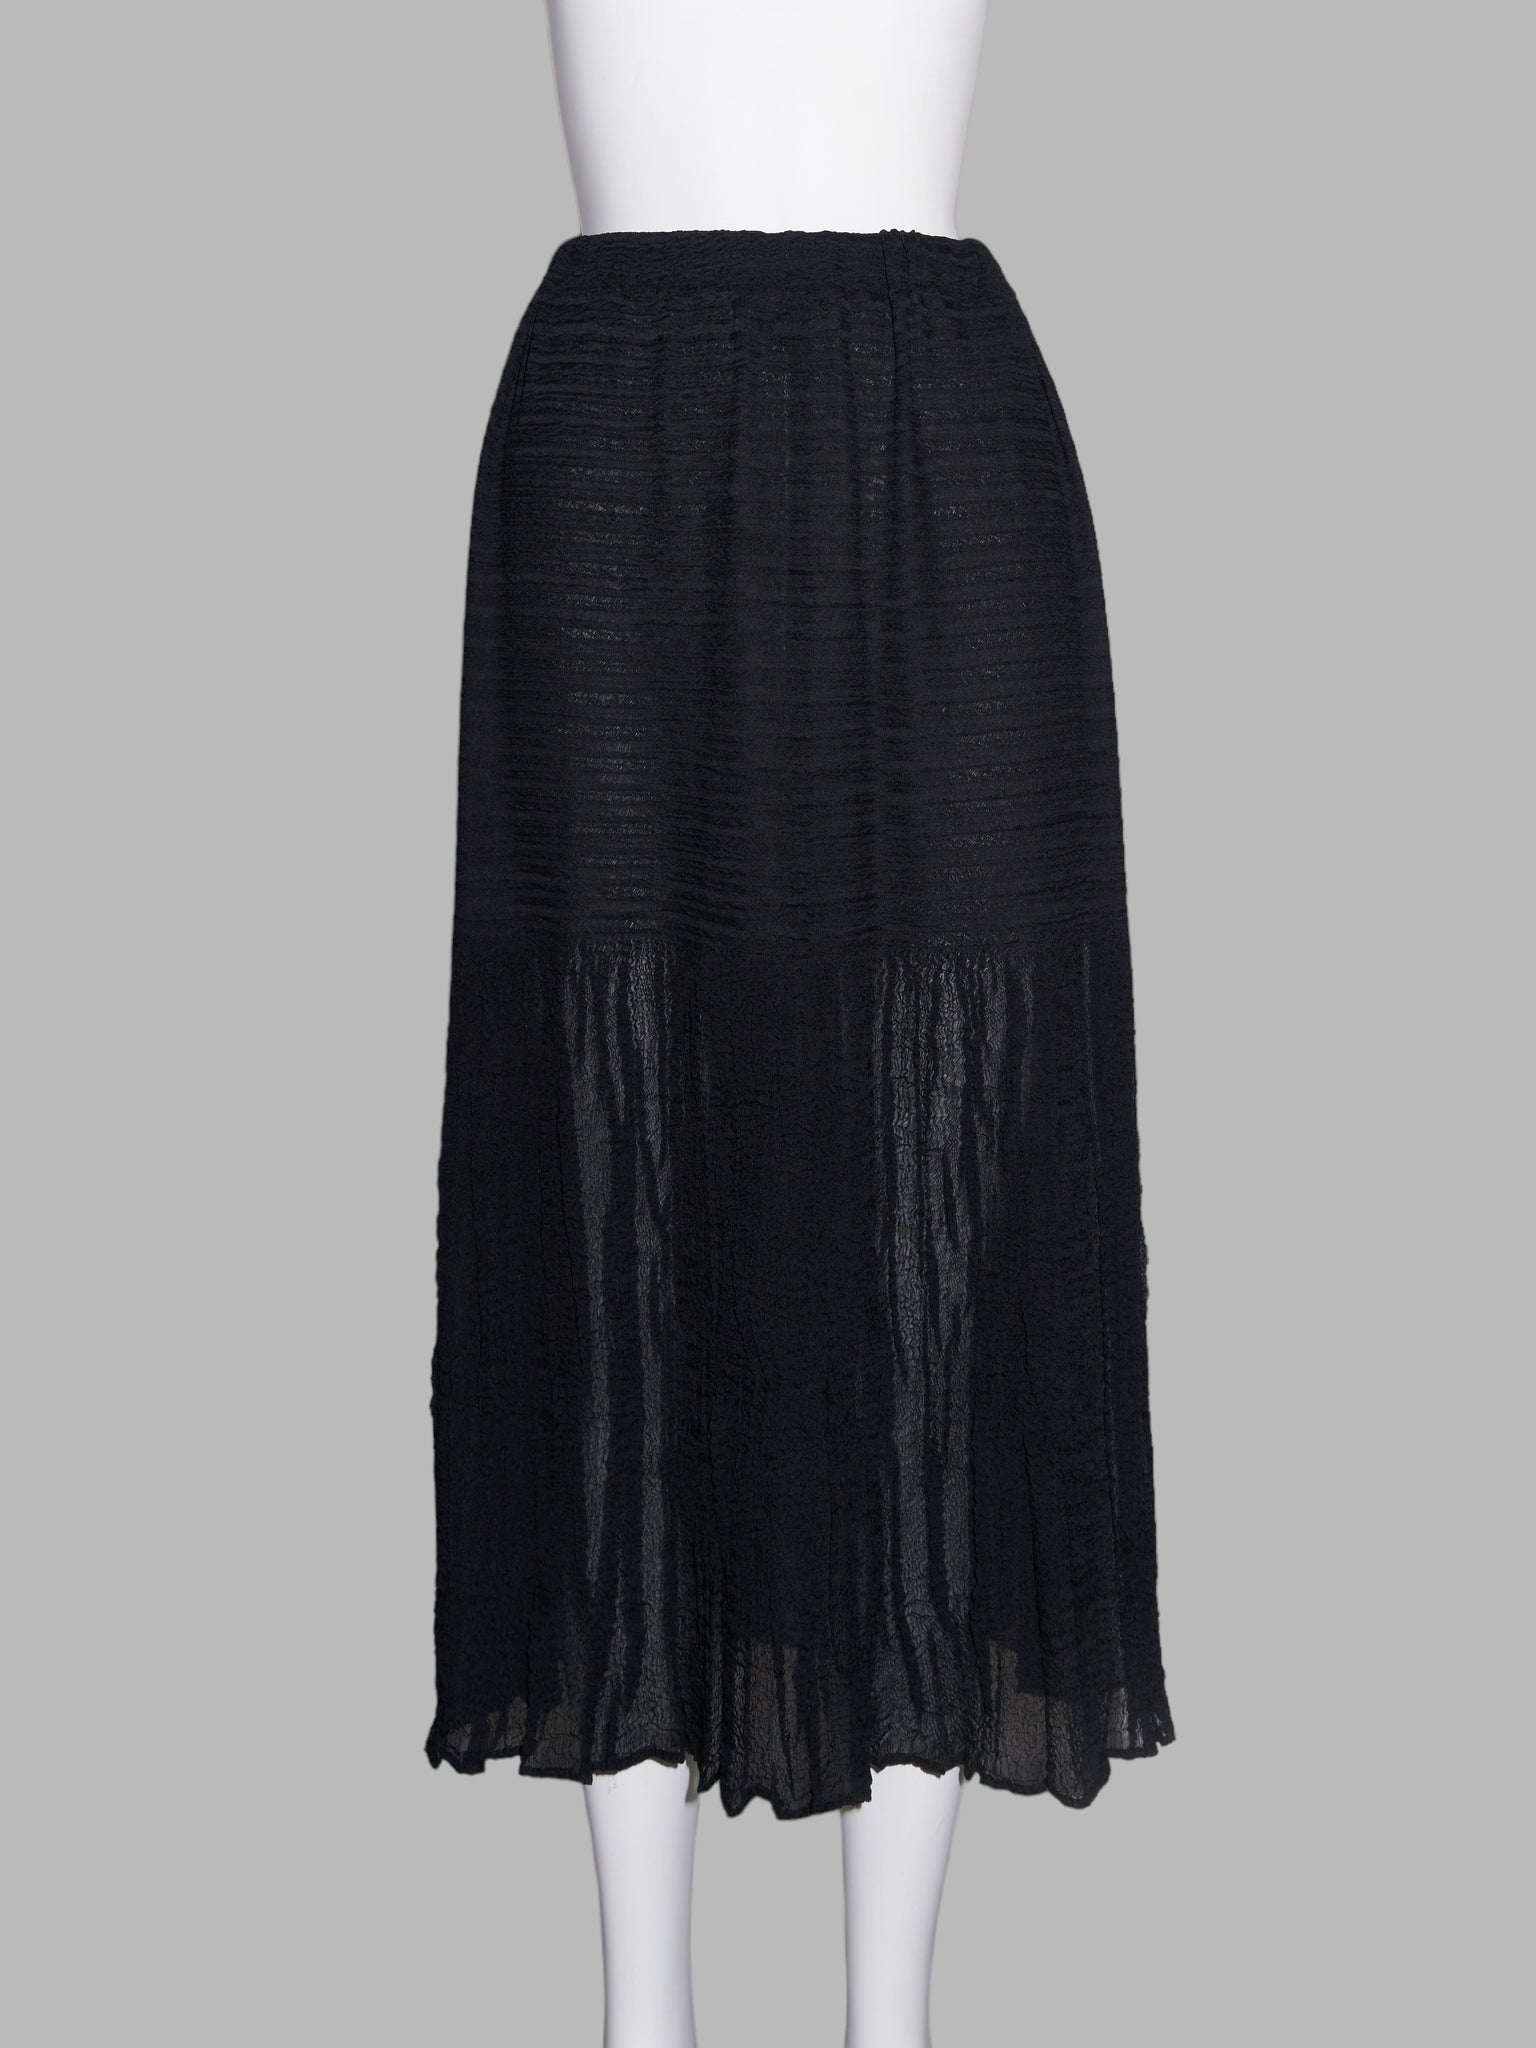 Wrinqle Inoue Pleats black wrinkled polyester skirt with sheer hem